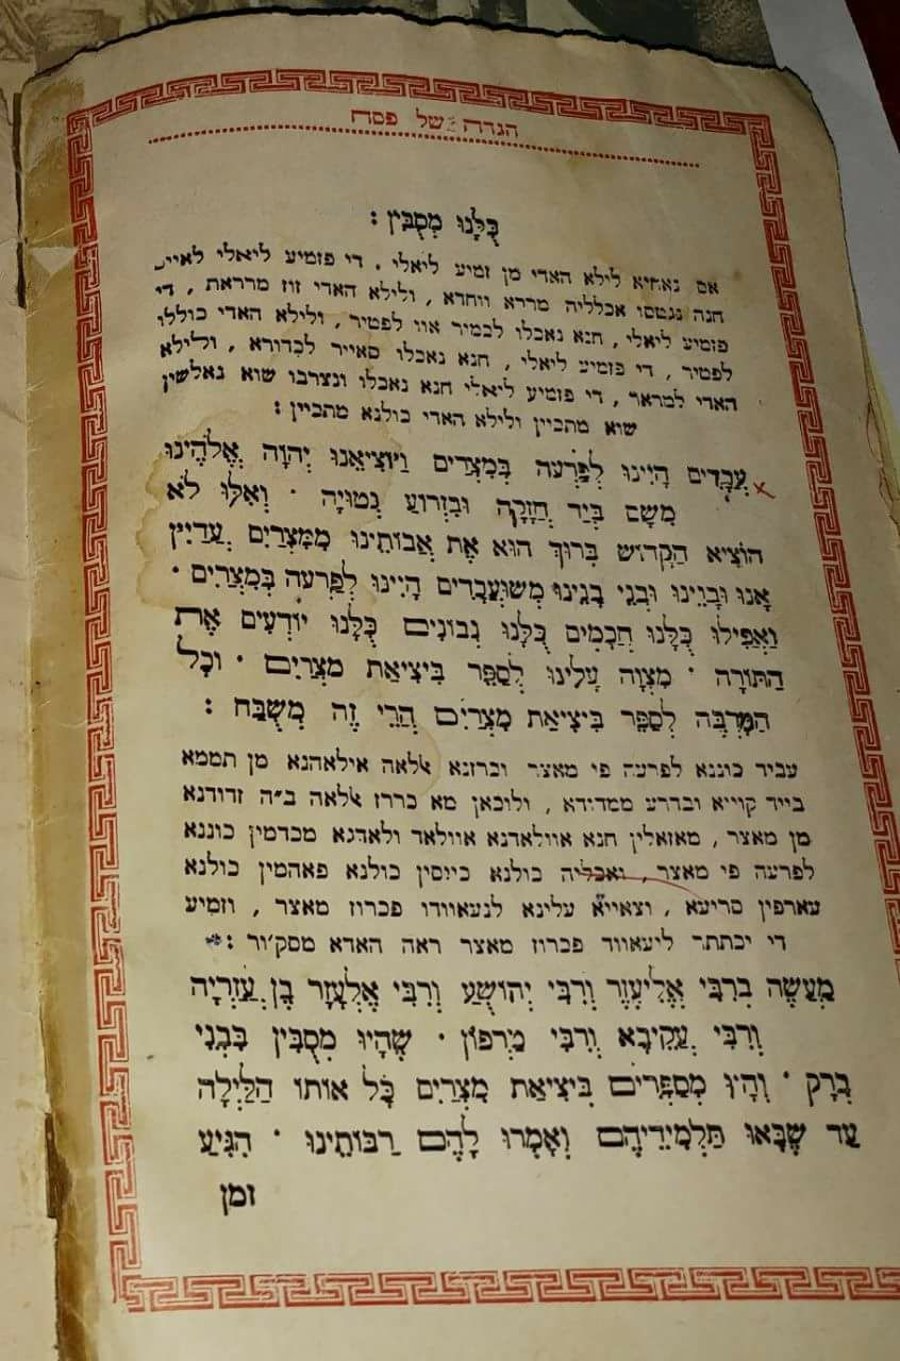 הגדה של פסח בעברית וערבית מרוקאית